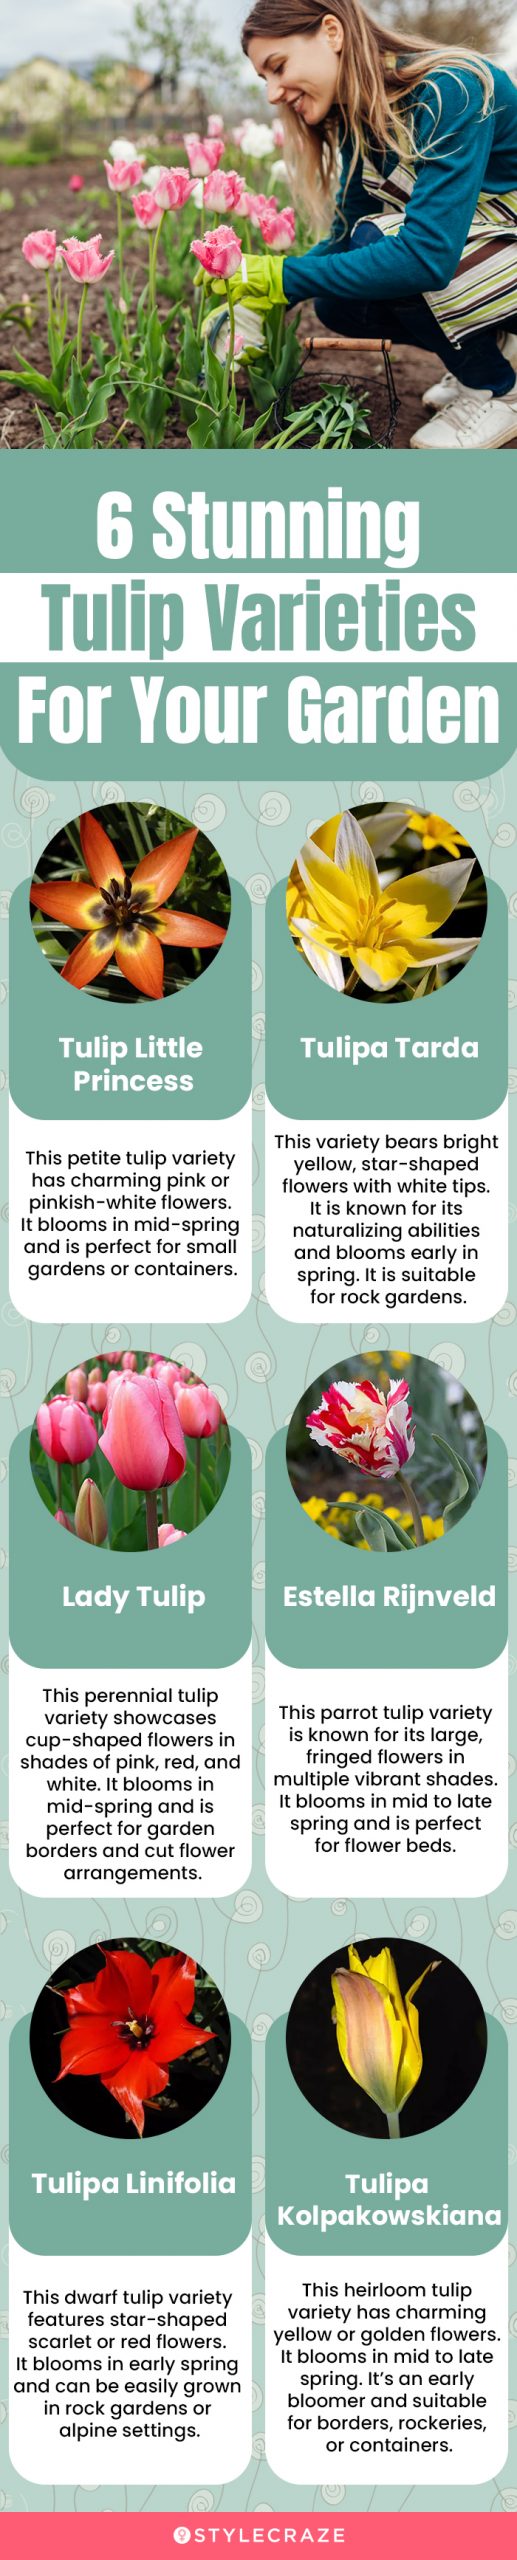 6 stunning tulip varieties for your garden (infographic)